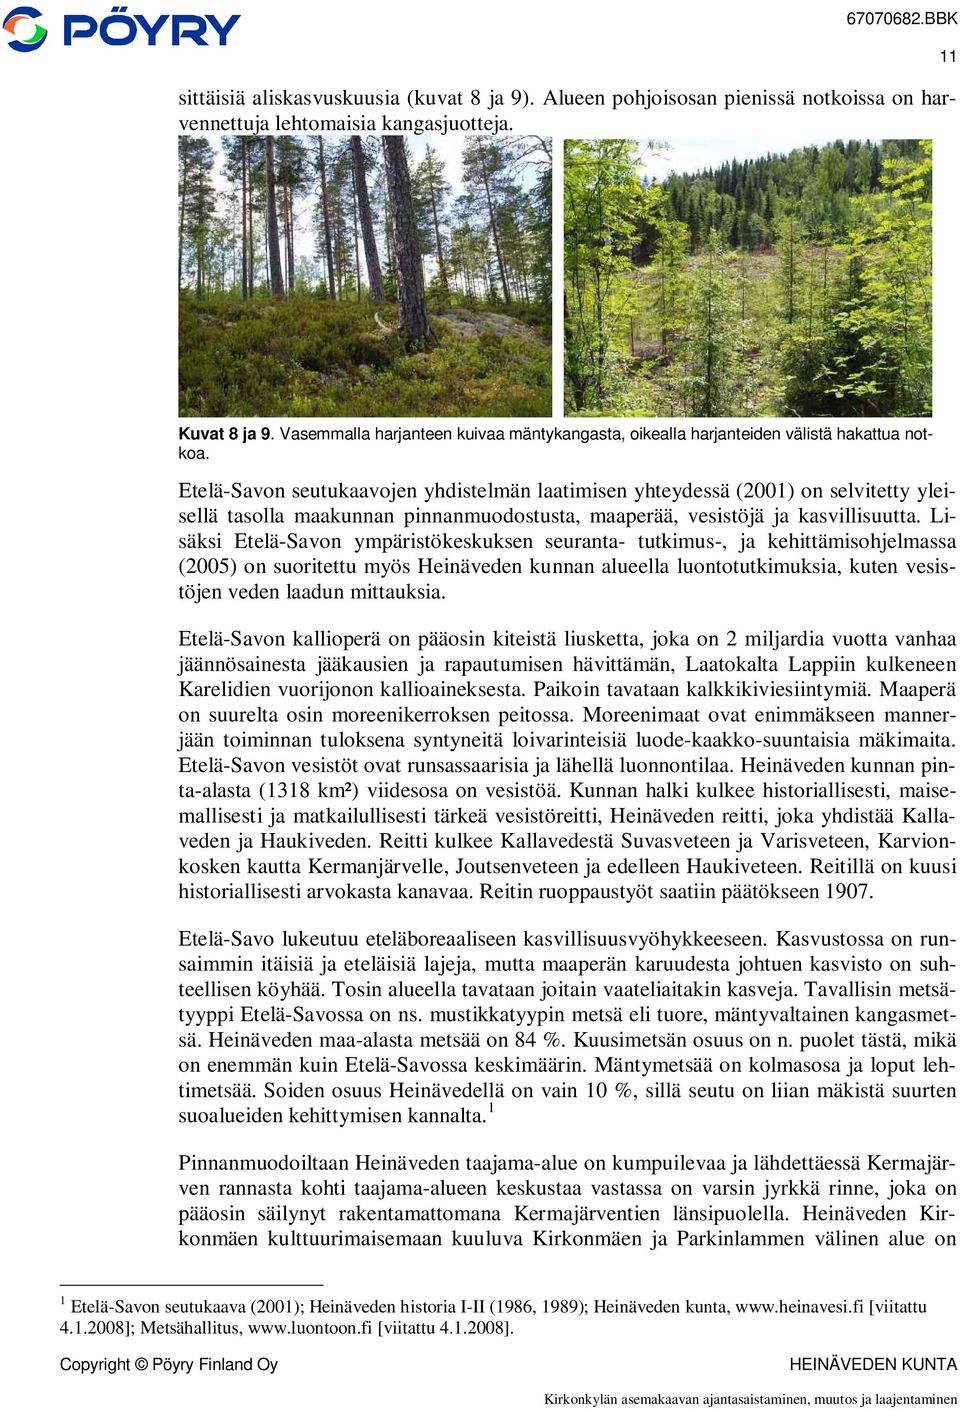 Etelä-Savon seutukaavojen yhdistelmän laatimisen yhteydessä (2001) on selvitetty yleisellä tasolla maakunnan pinnanmuodostusta, maaperää, vesistöjä ja kasvillisuutta.